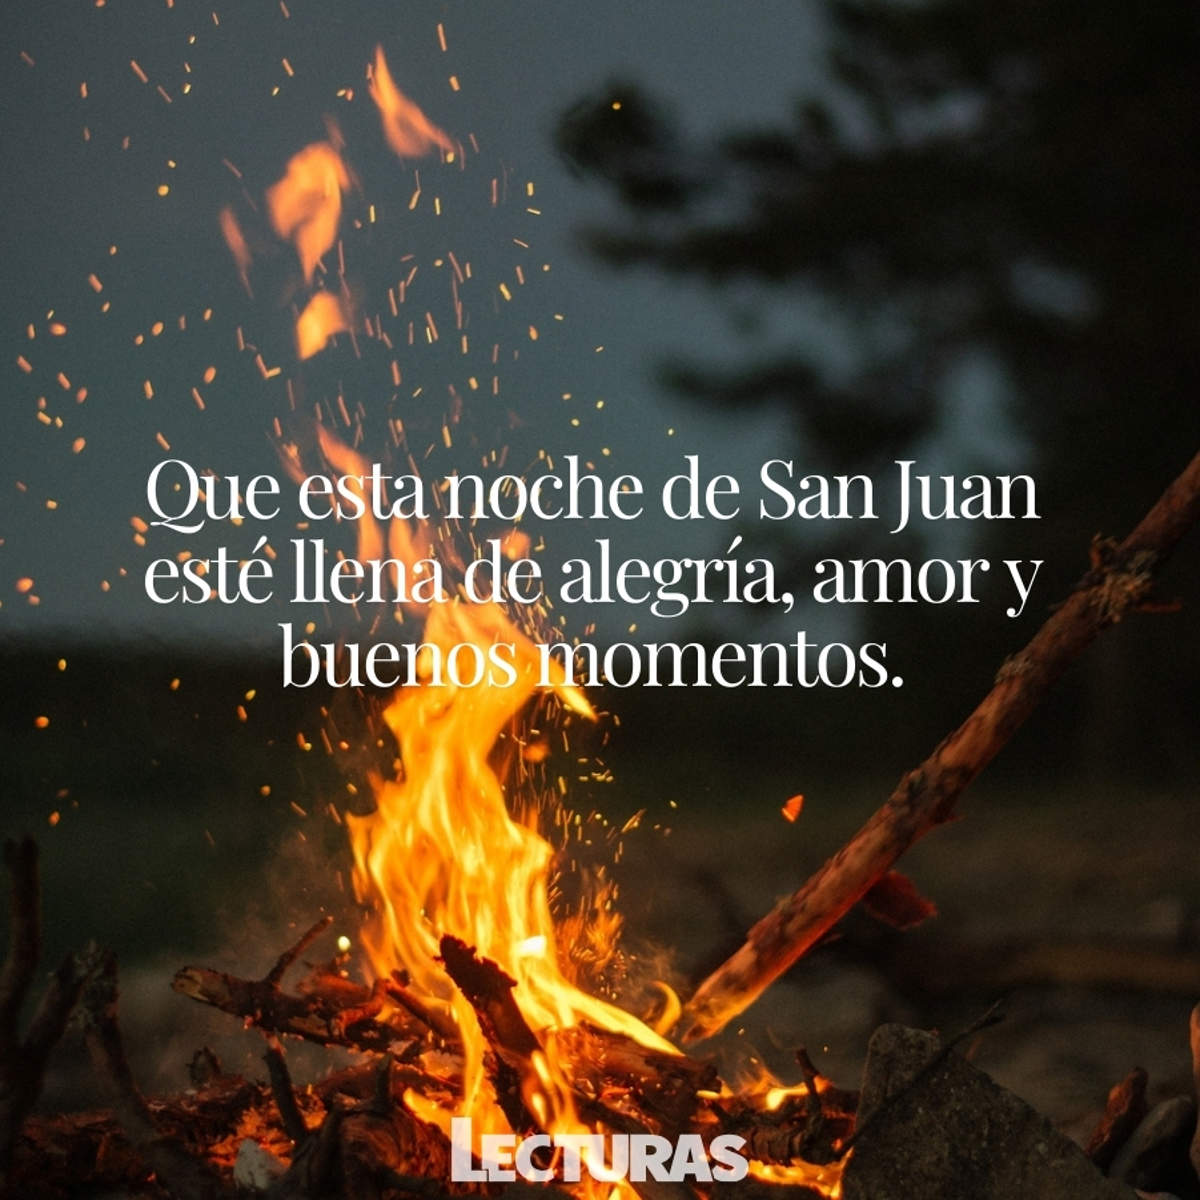 55 deseos, frases y reflexiones para la noche de San Juan